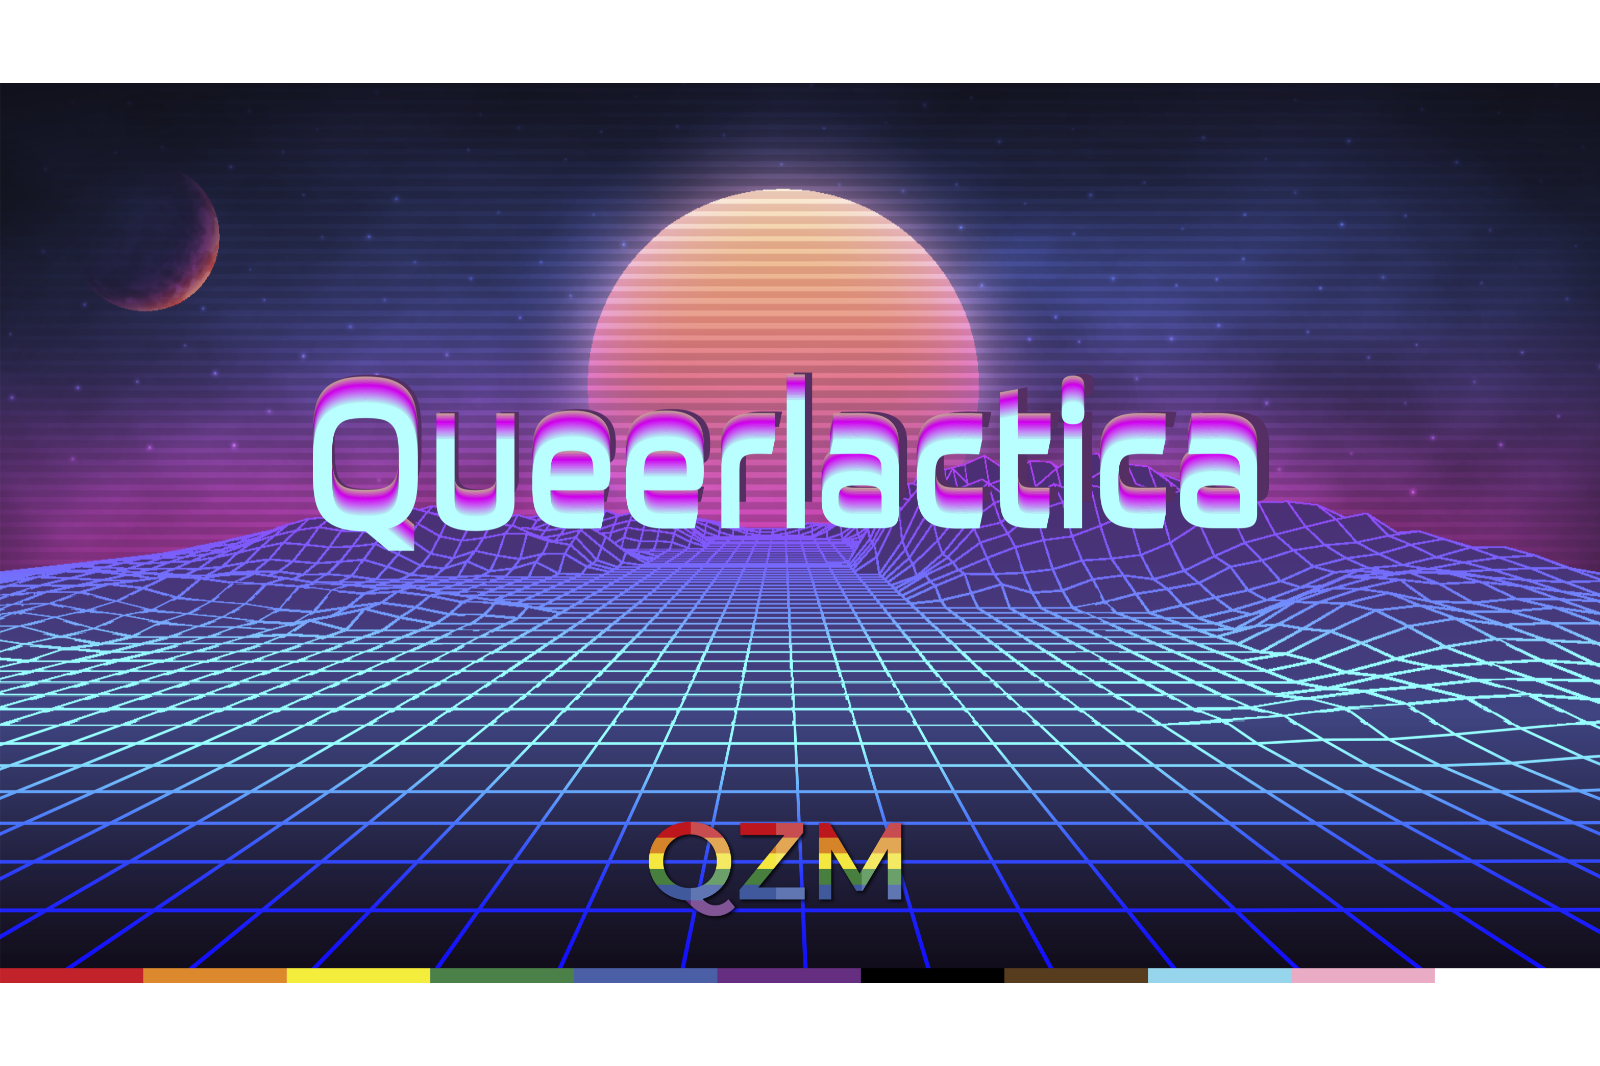 Auf einem Hintergrund, der eine Art Weltraum andeutet, steht in großer Schrift "Queerlactica" in der Mitte. Unten ist das Logo des QZM zu sehen.